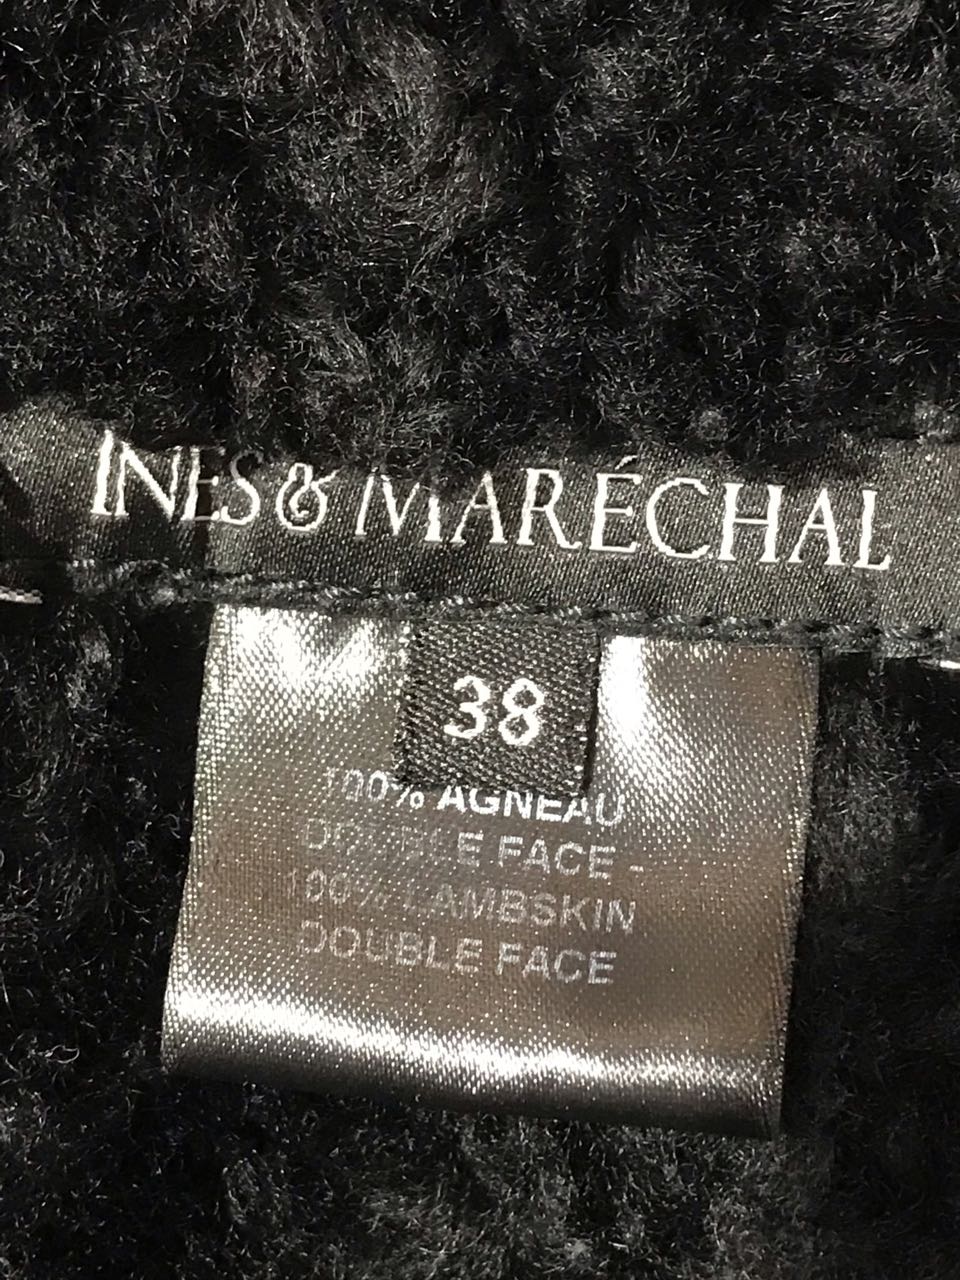 Veste peau lainée Ines & Marechal T.38